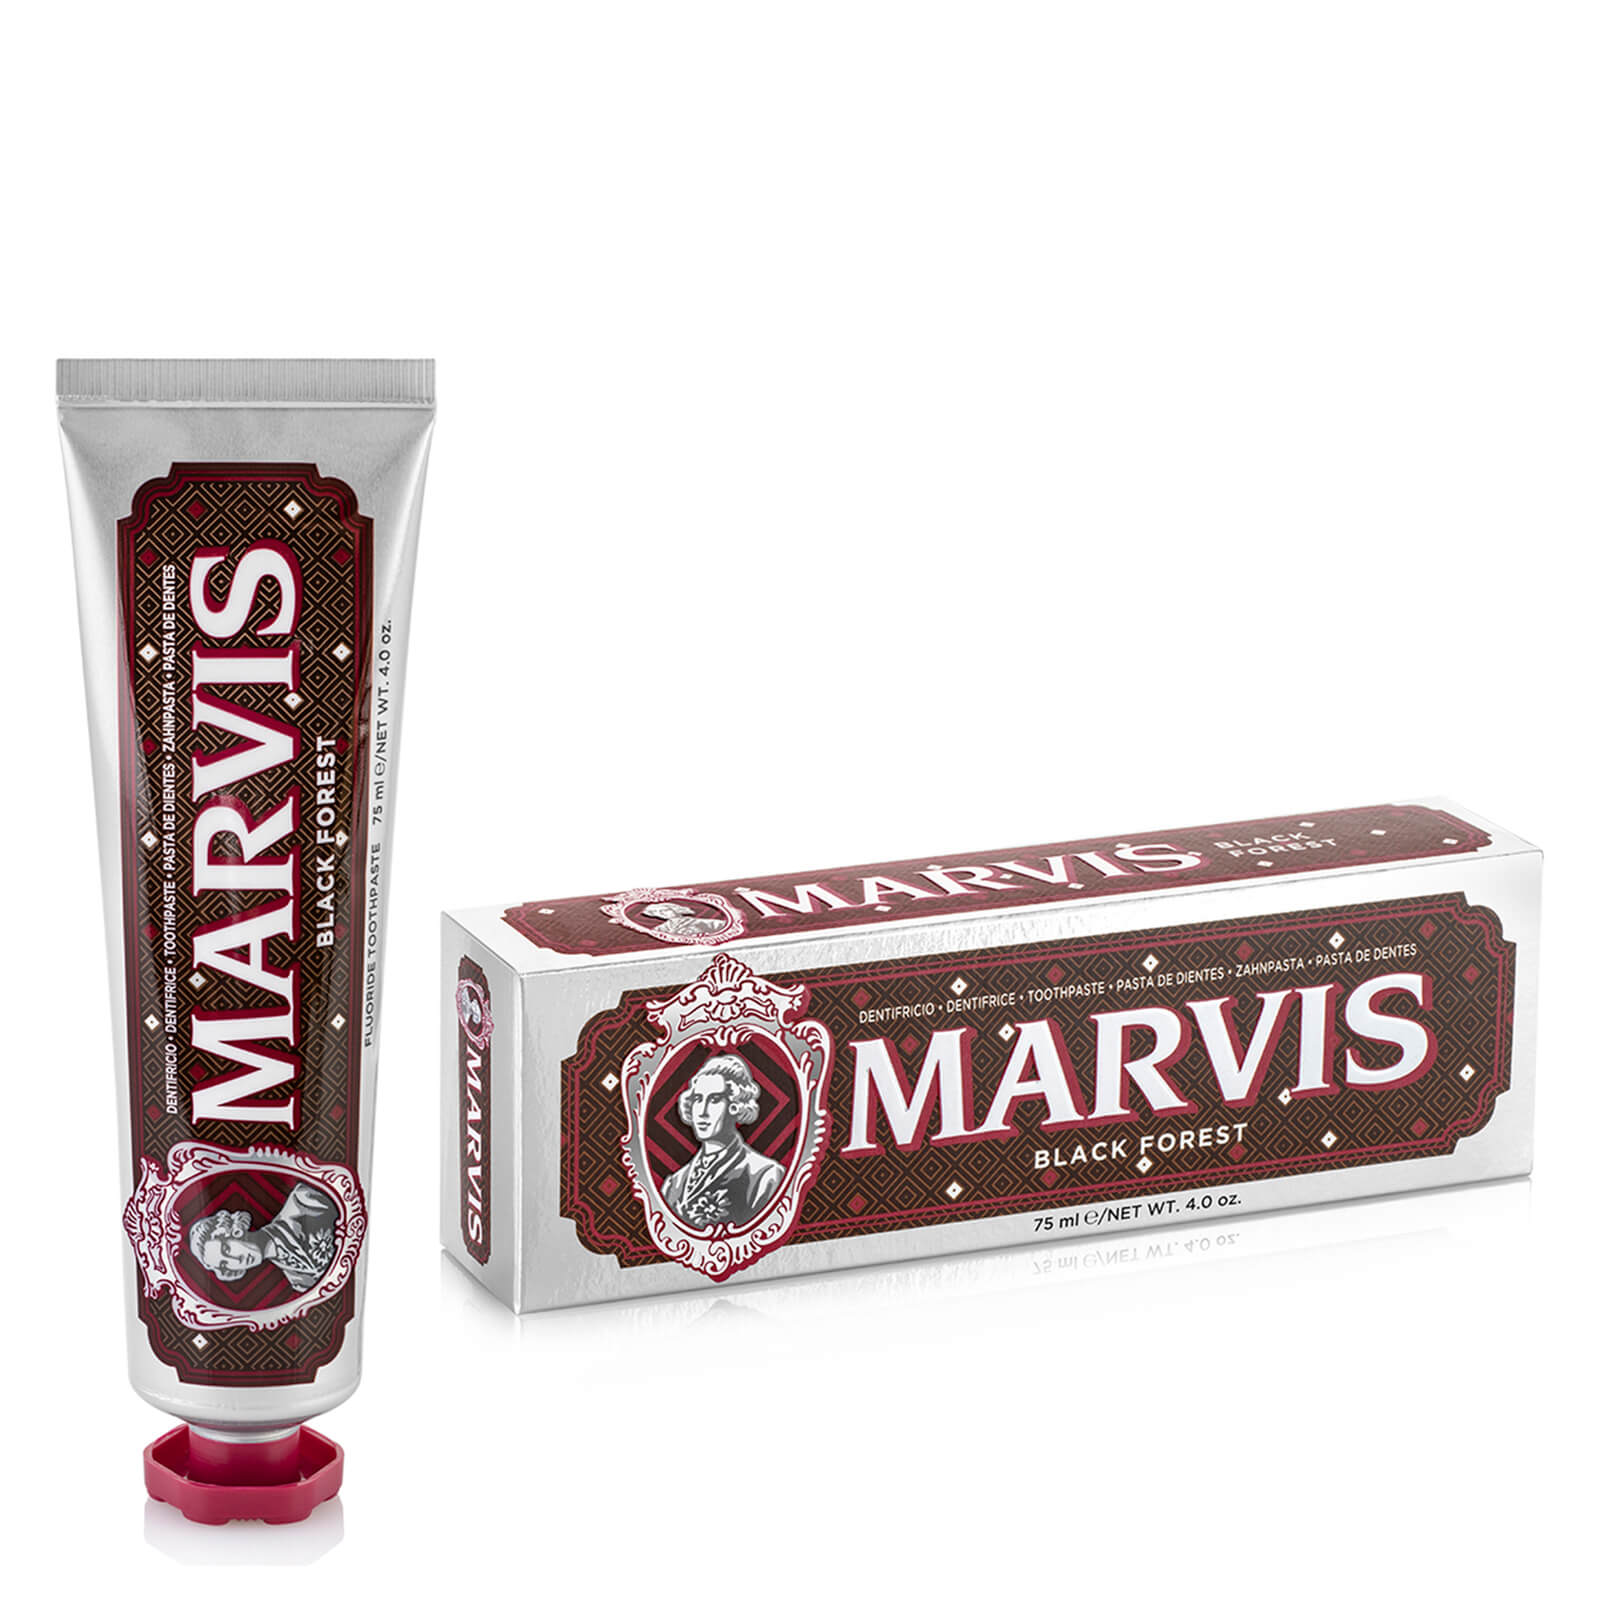 Marvis Black Forest Toothpaste 75ml lookfantastic.com imagine